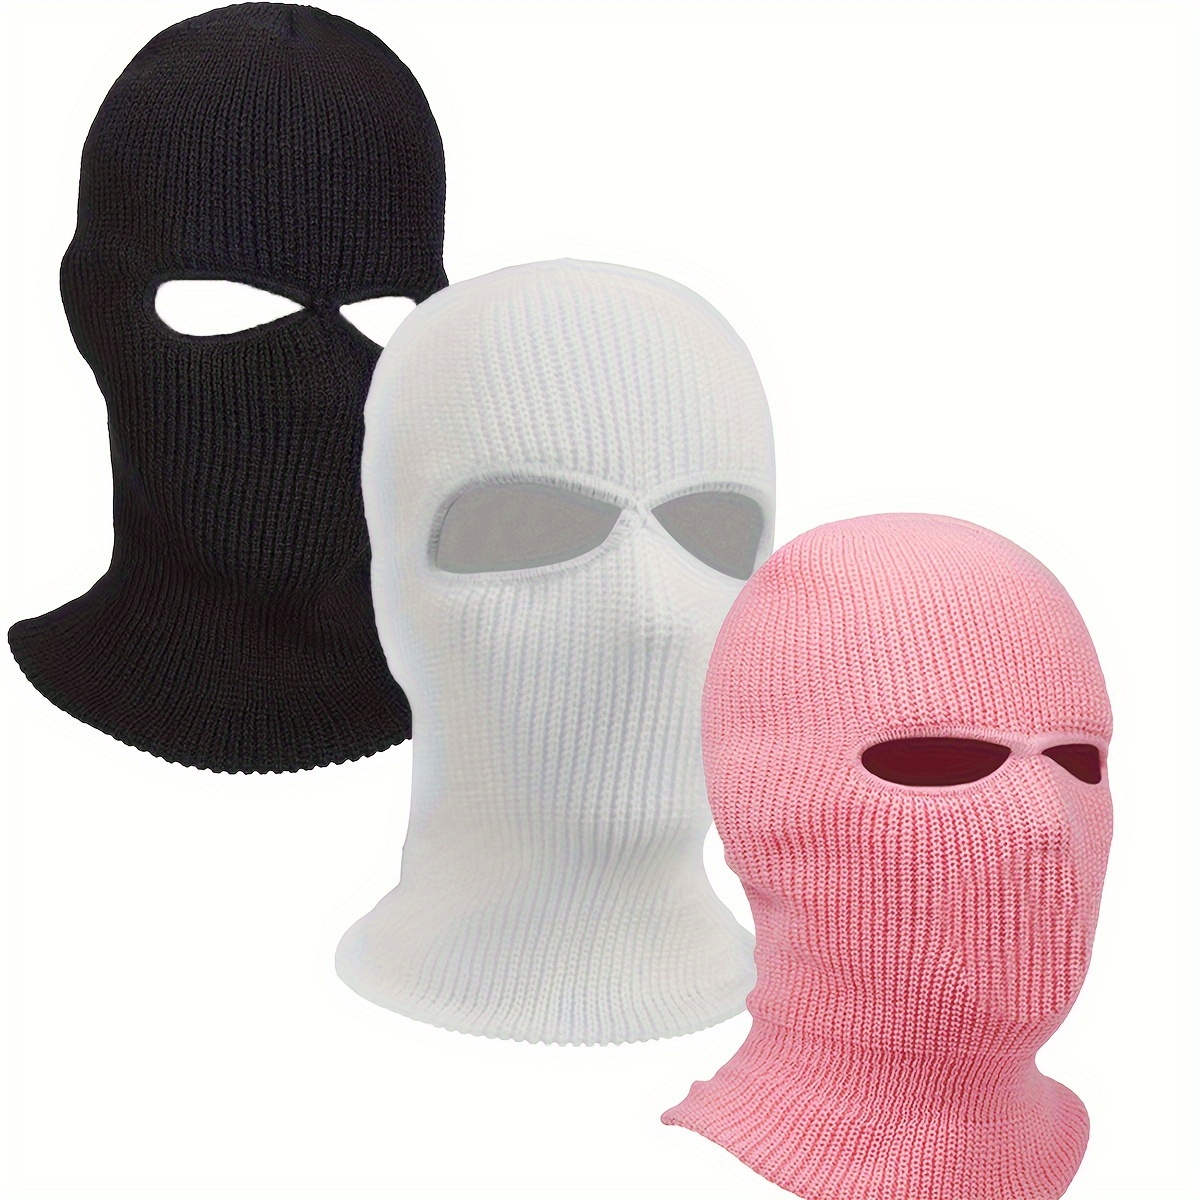 2 Packs de Masque de Ski 3 Trous Tricoté Couverture Complète Masque de  Cagoule Halloween Partie Masque de Cyclisme Bonnet pour l'Extérieur 